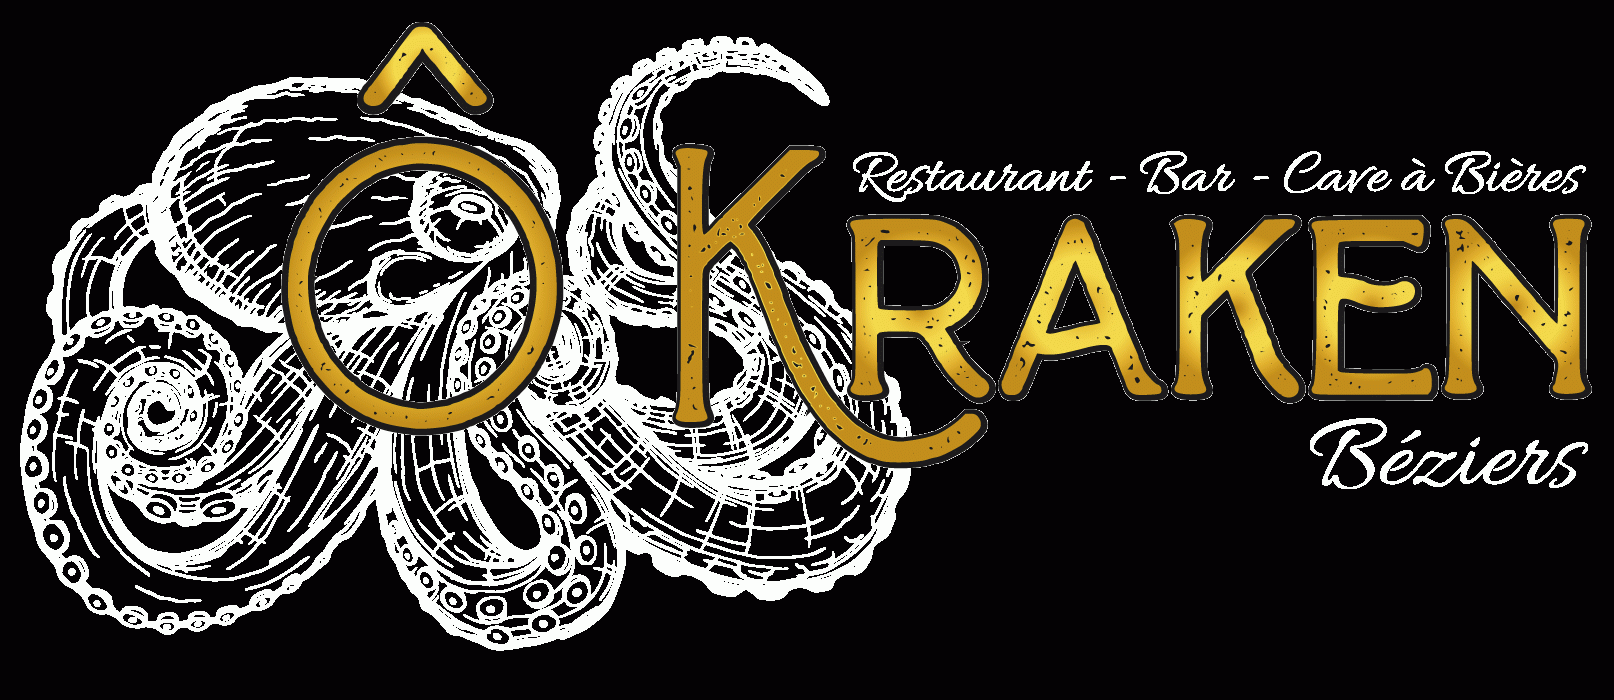 Logo du bar, restaurant, cave à bière, le Ô kraken, cliquer dessus ramène sur la page principal du site web.